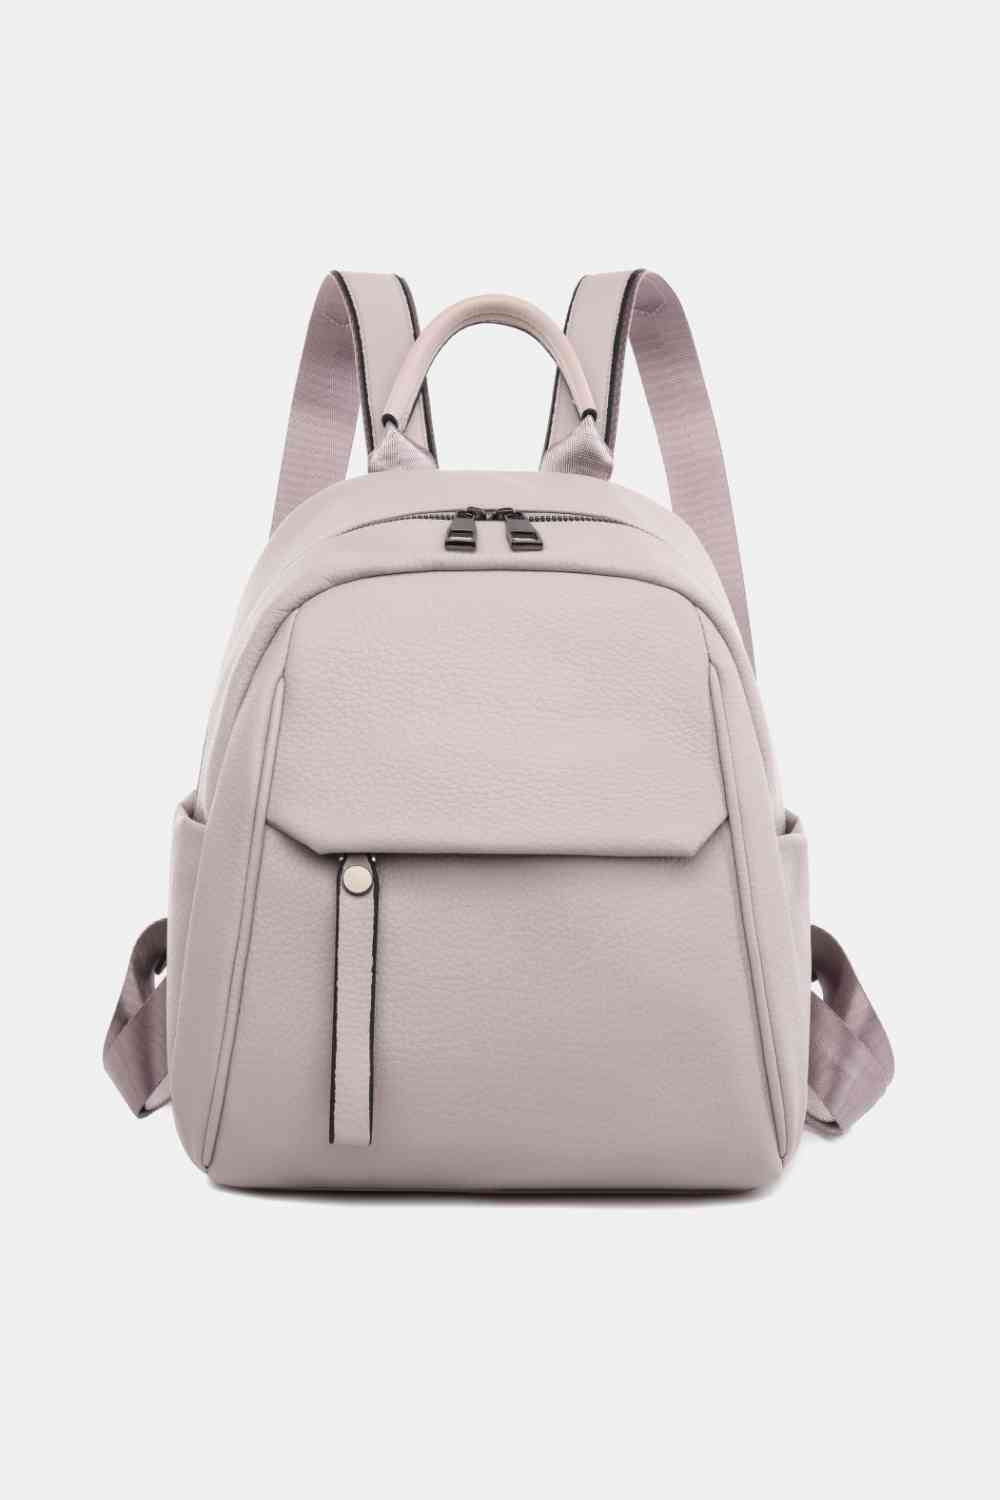 TEEK - Best Basic Backpack BAG TEEK Trend Lavender  